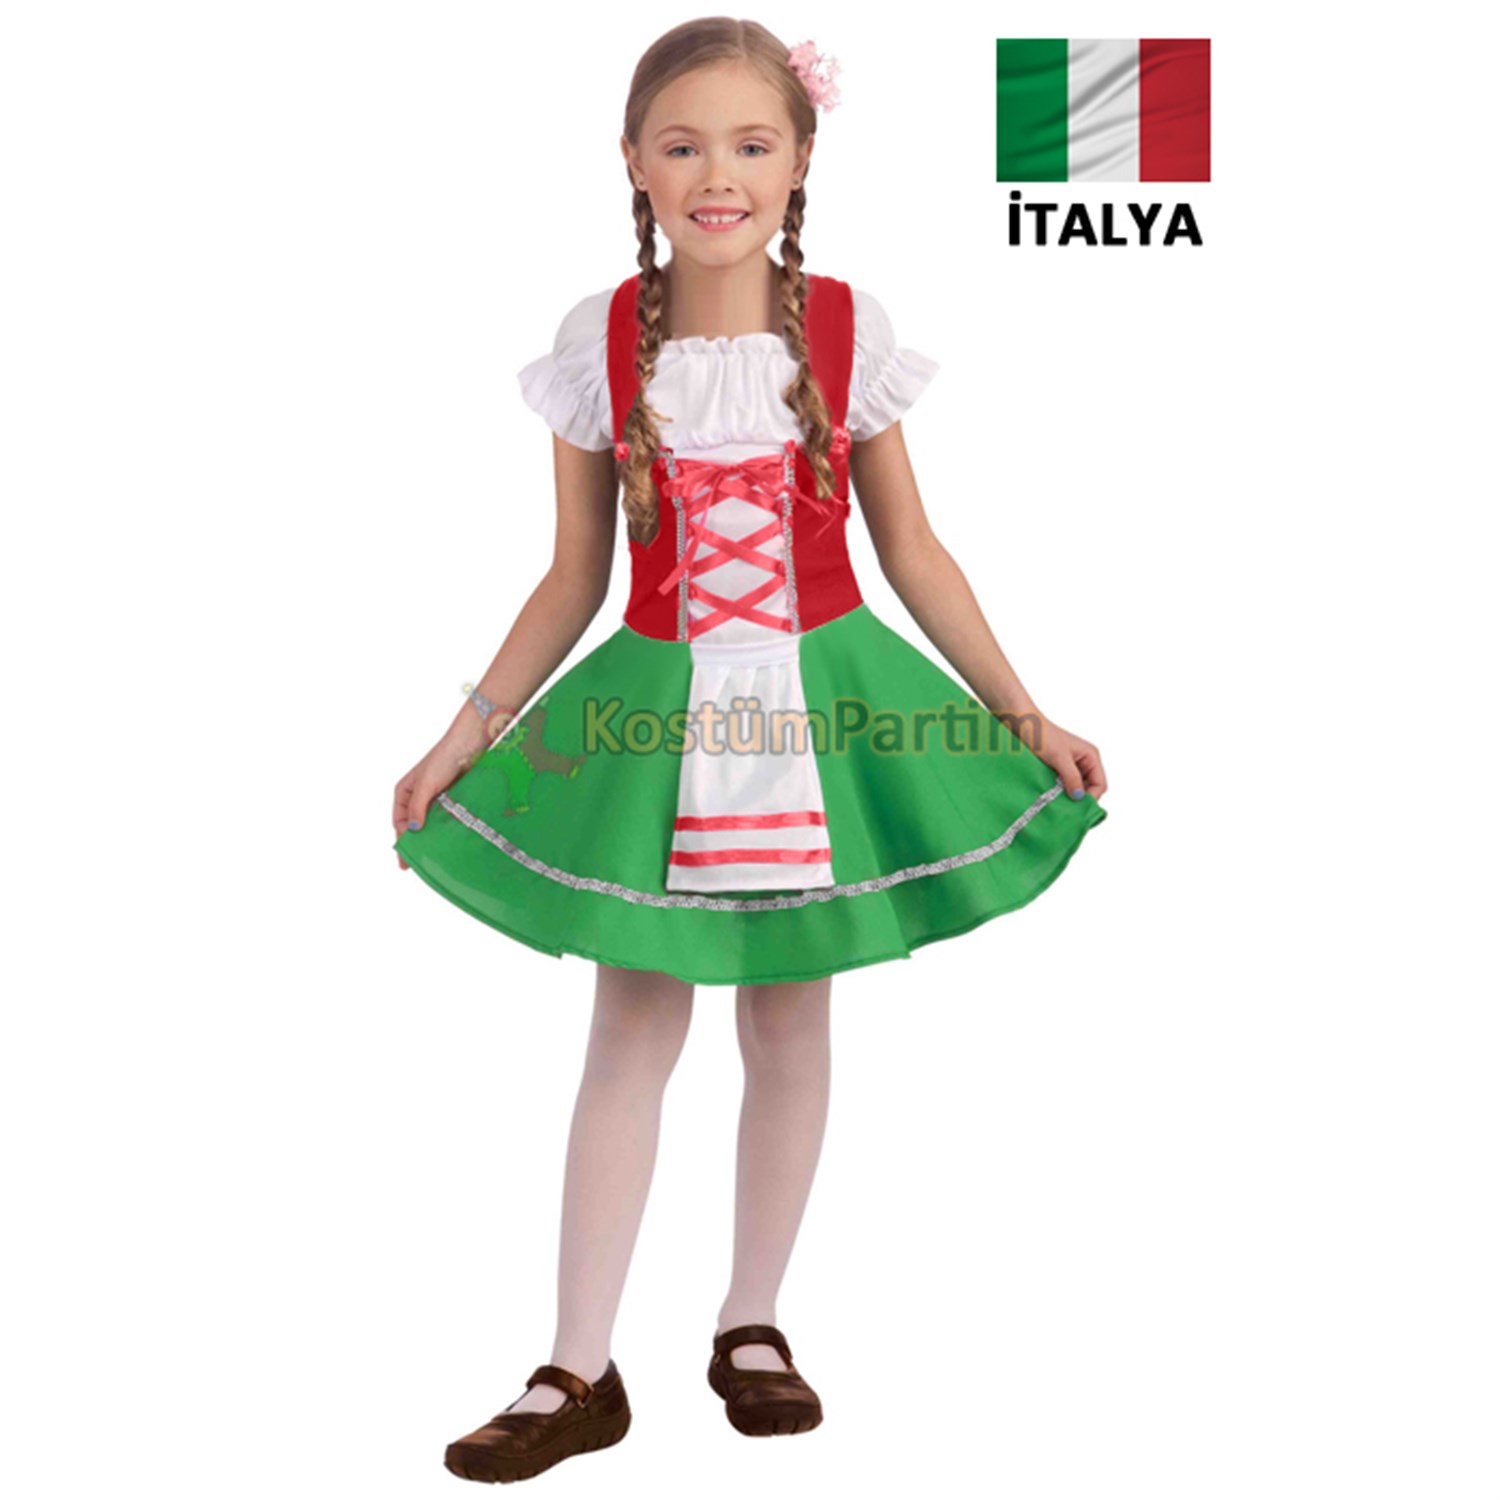 İtalya Kız Kostümü Çocuk Kıyafeti - KostümPartim®